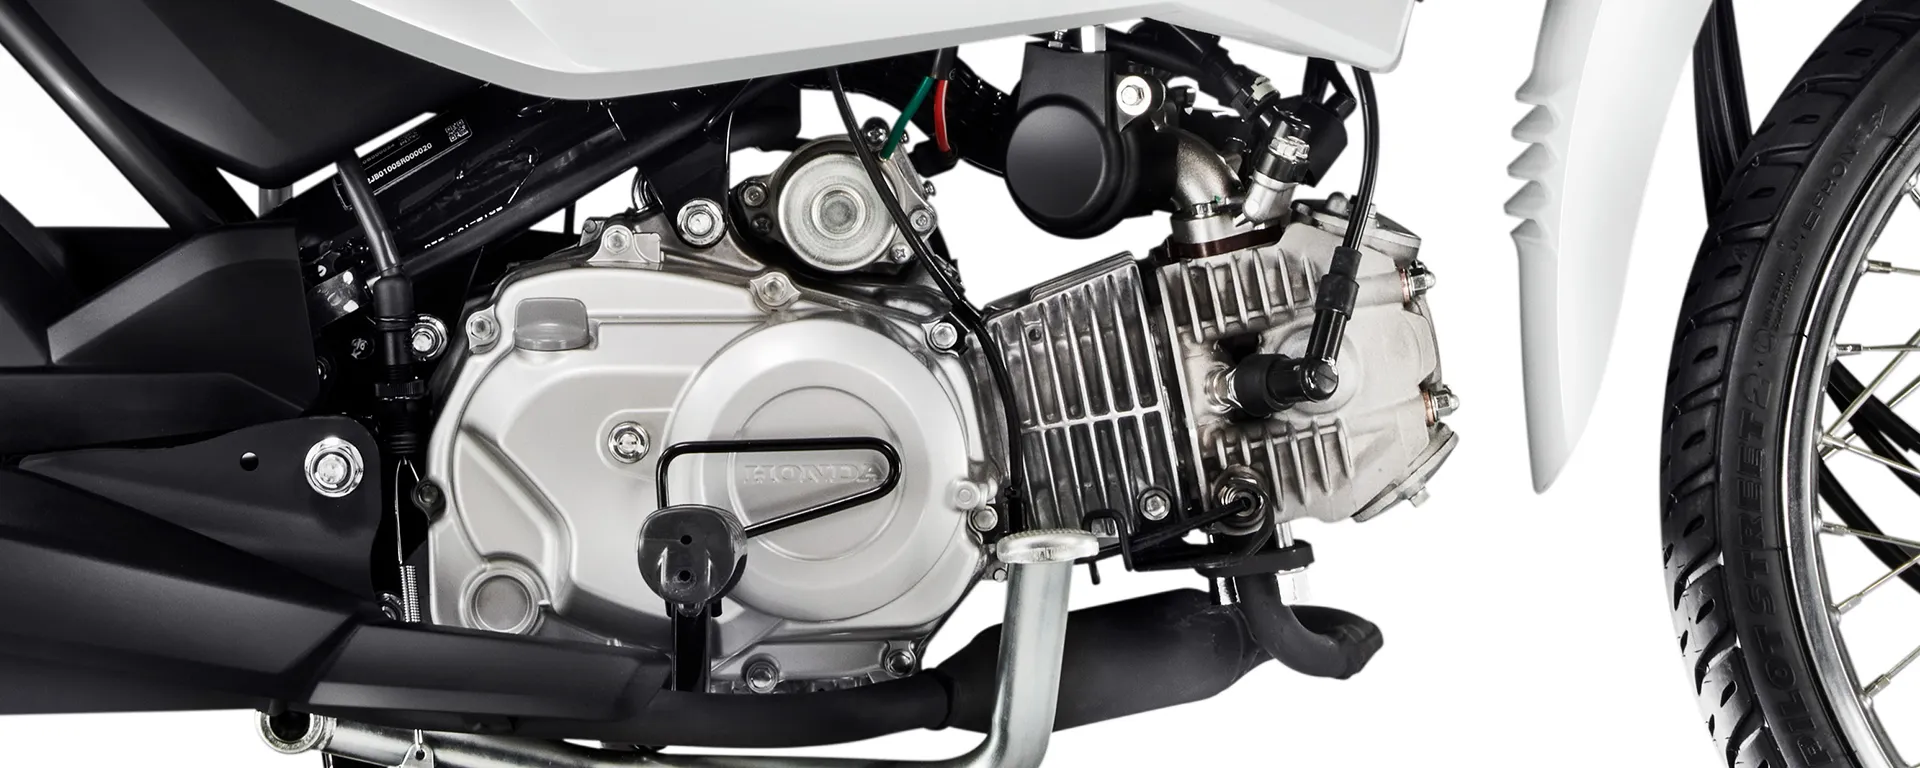 Detalhe Lateral do Motor da Moto Honda Pop 110i ES na cor Branco Ross White